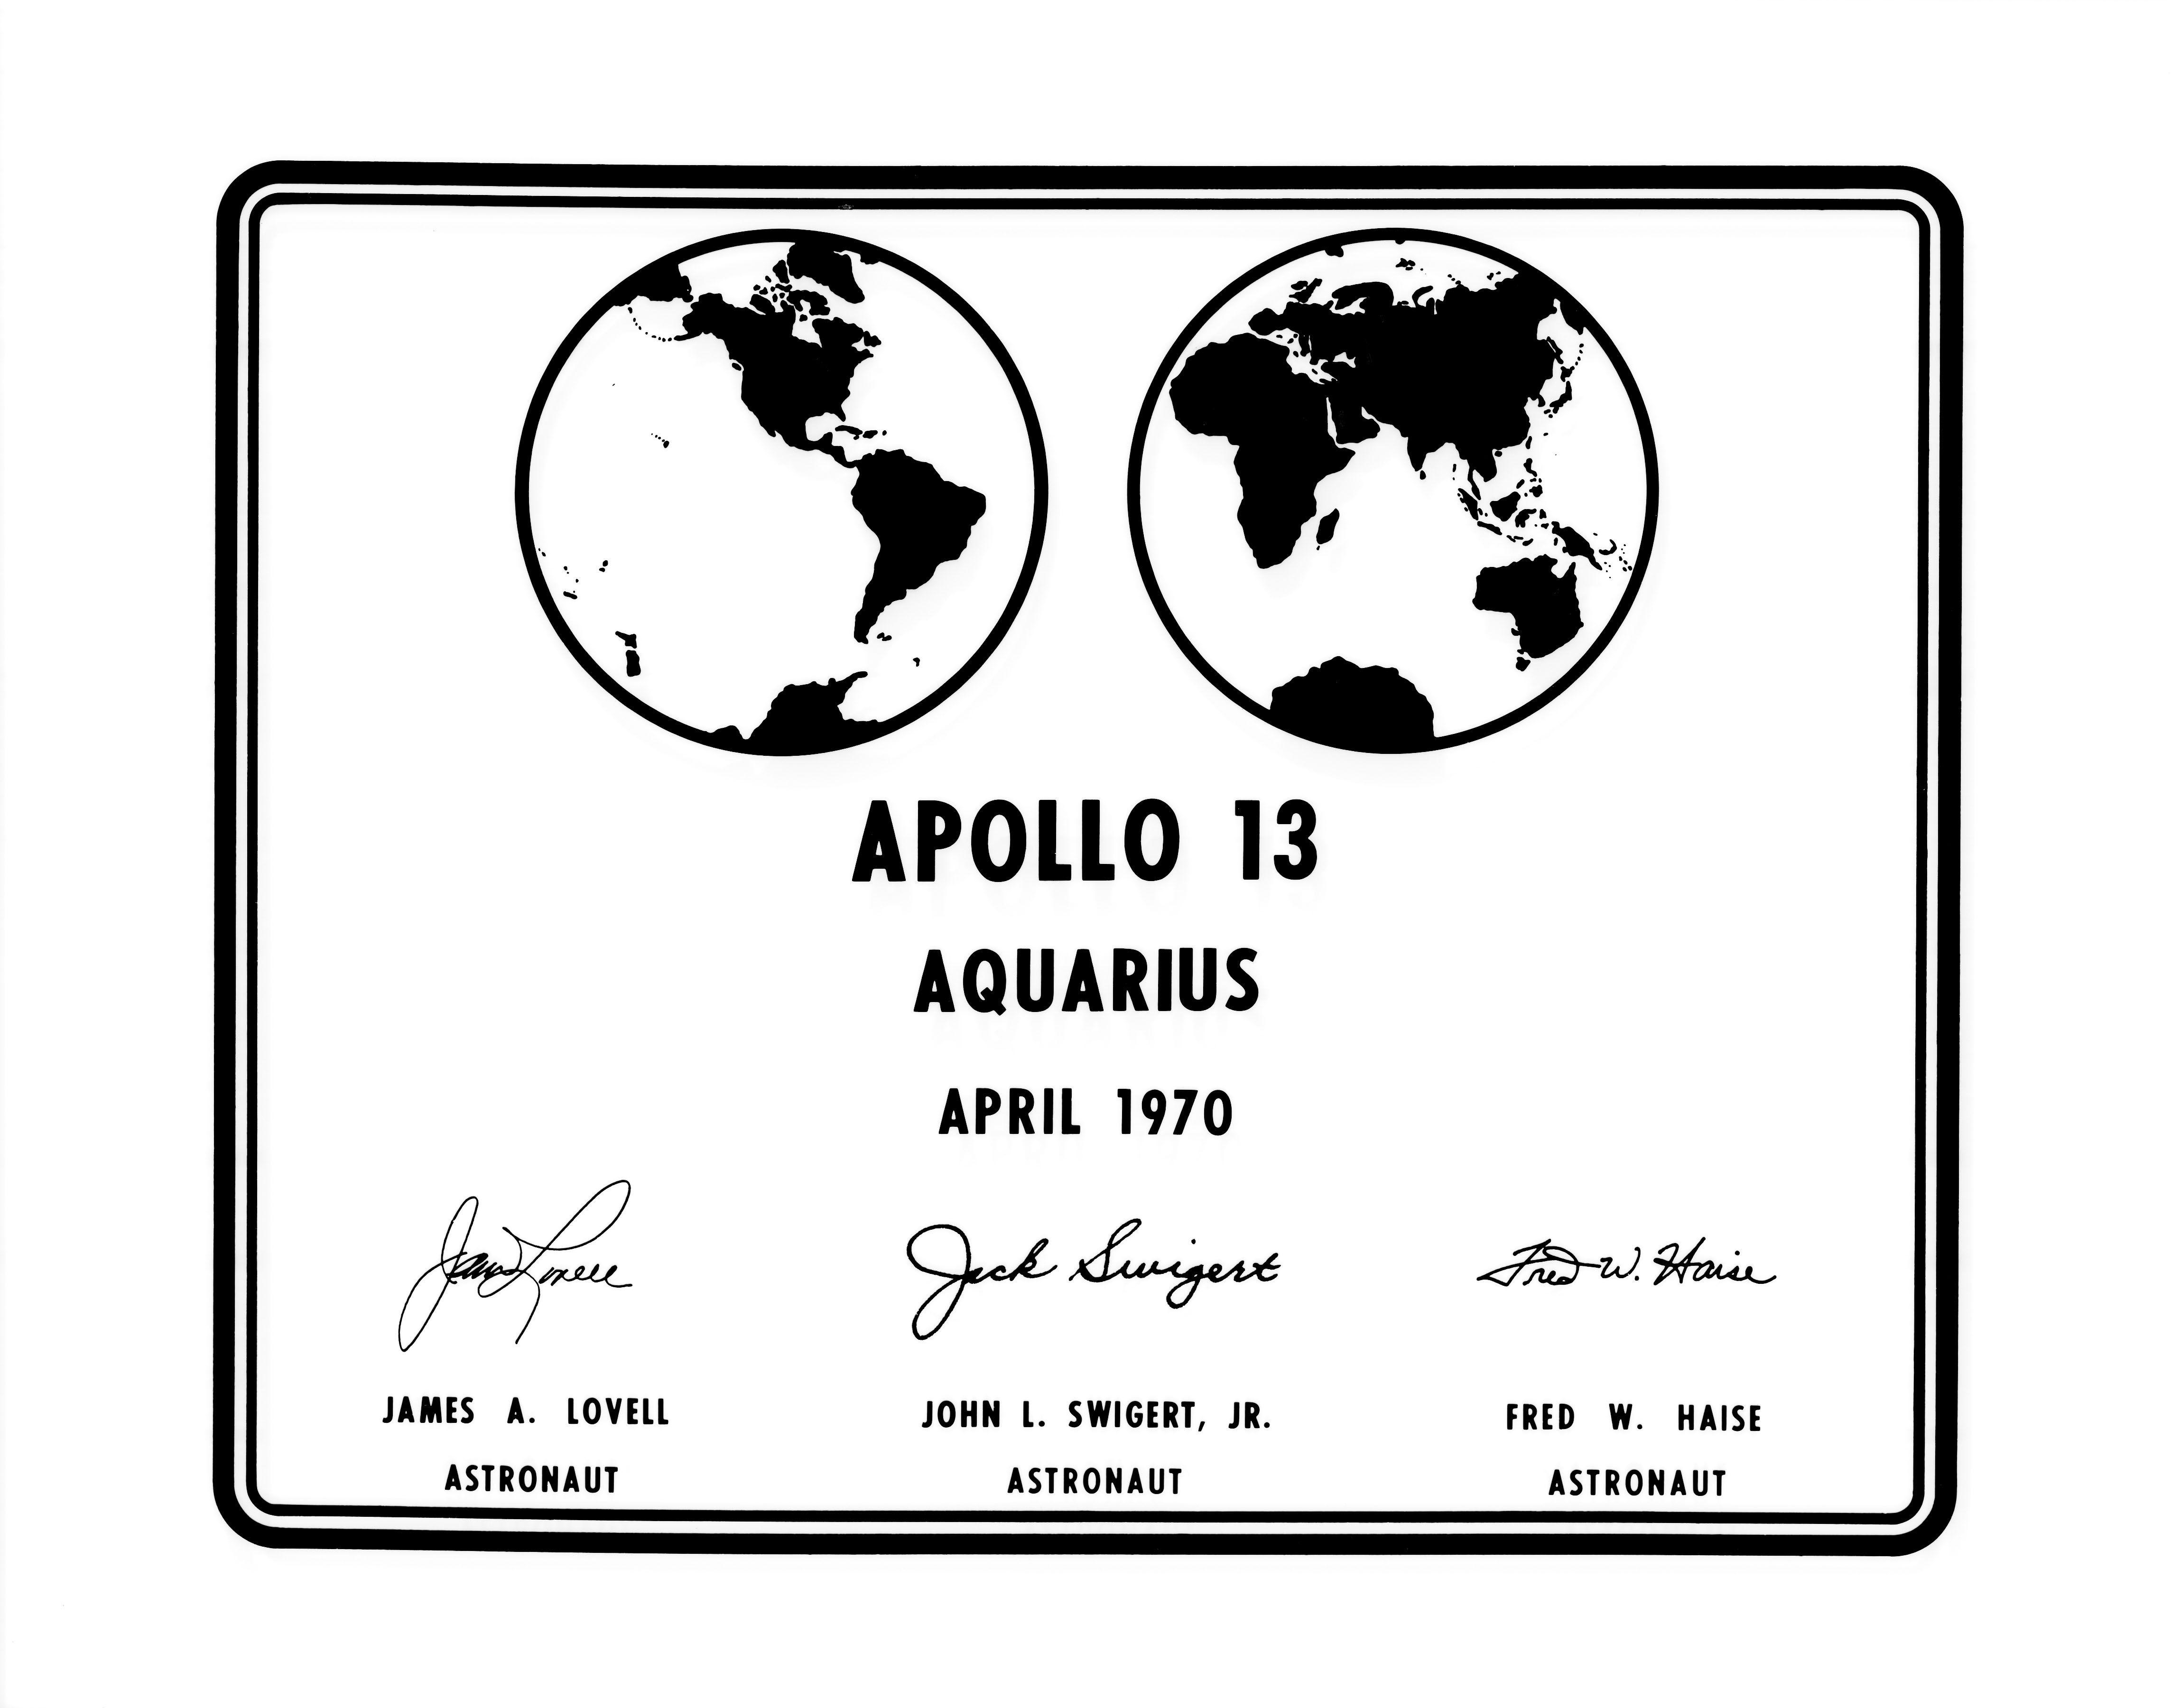 Small NASA Commander Logo - Photographic replica of the plaque Apollo 13 astronauts will leave